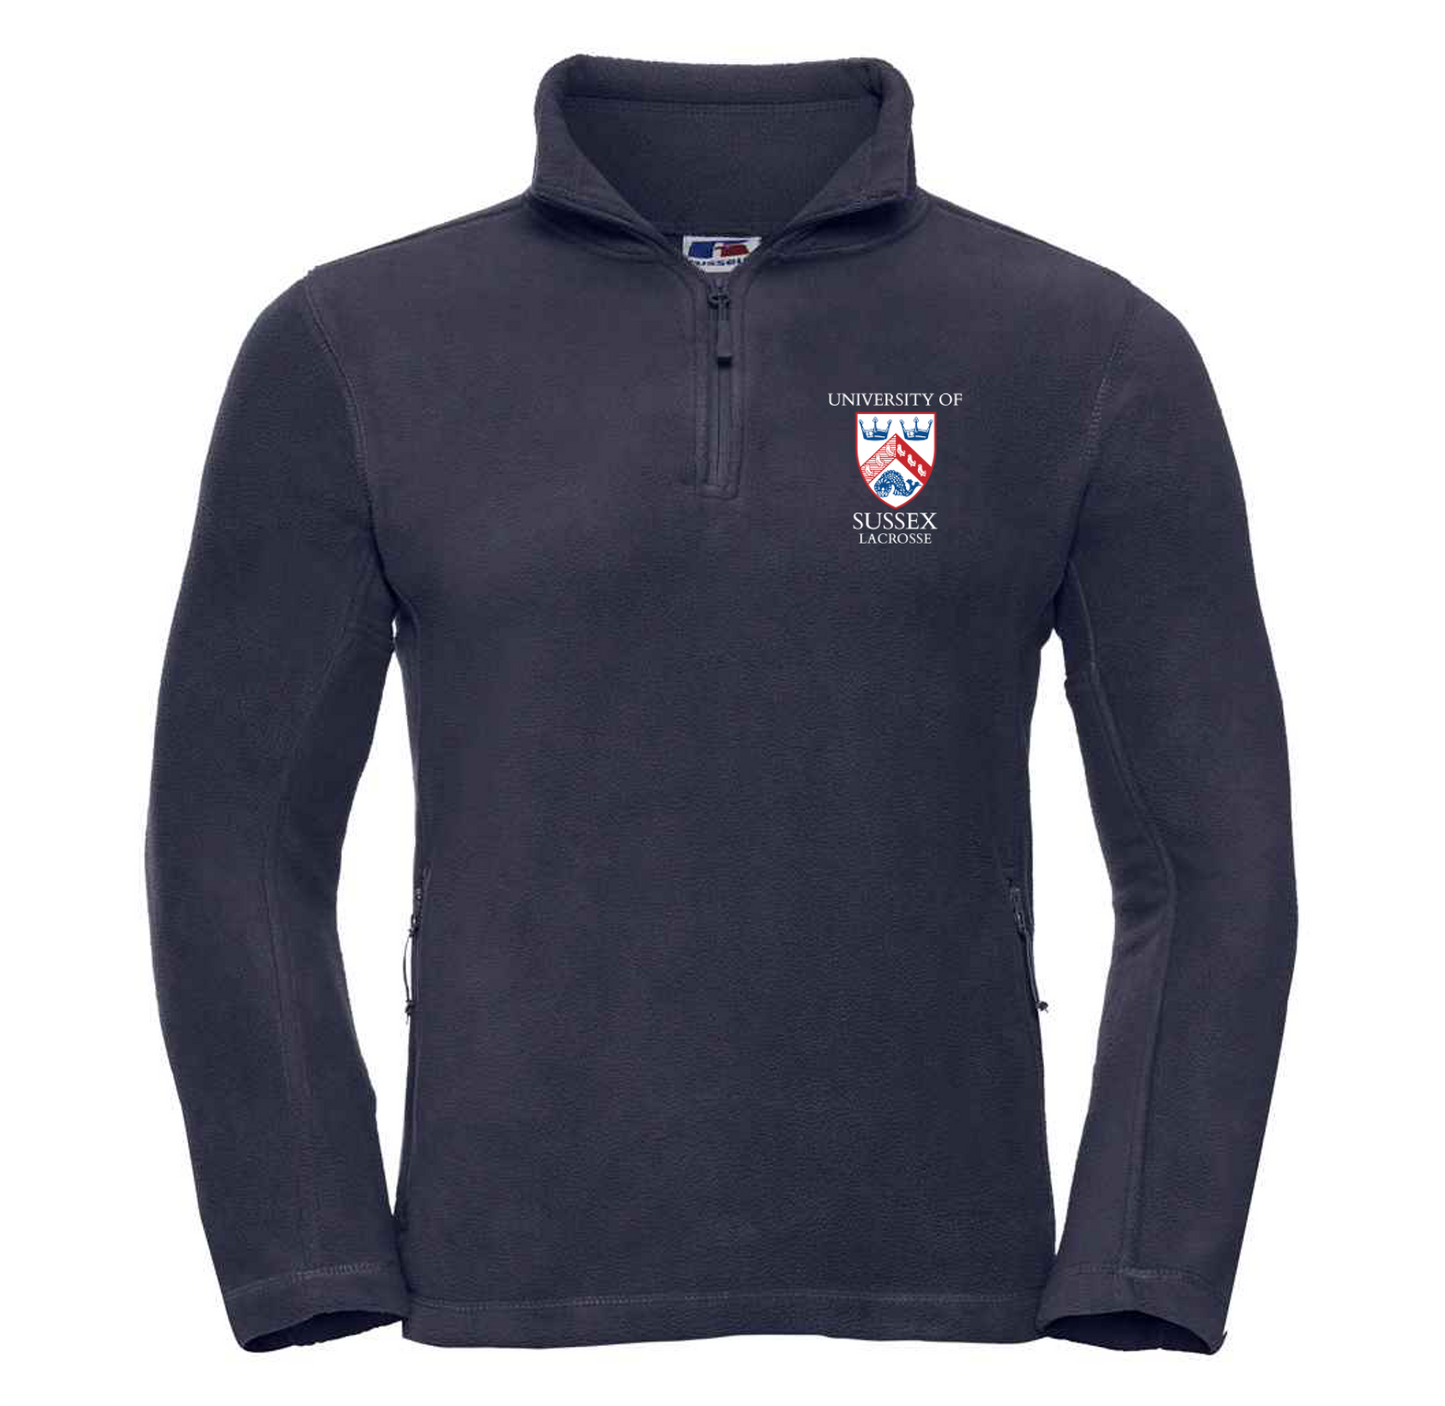 Uni of Sussex Lacrosse 1/4 Zip Fleece